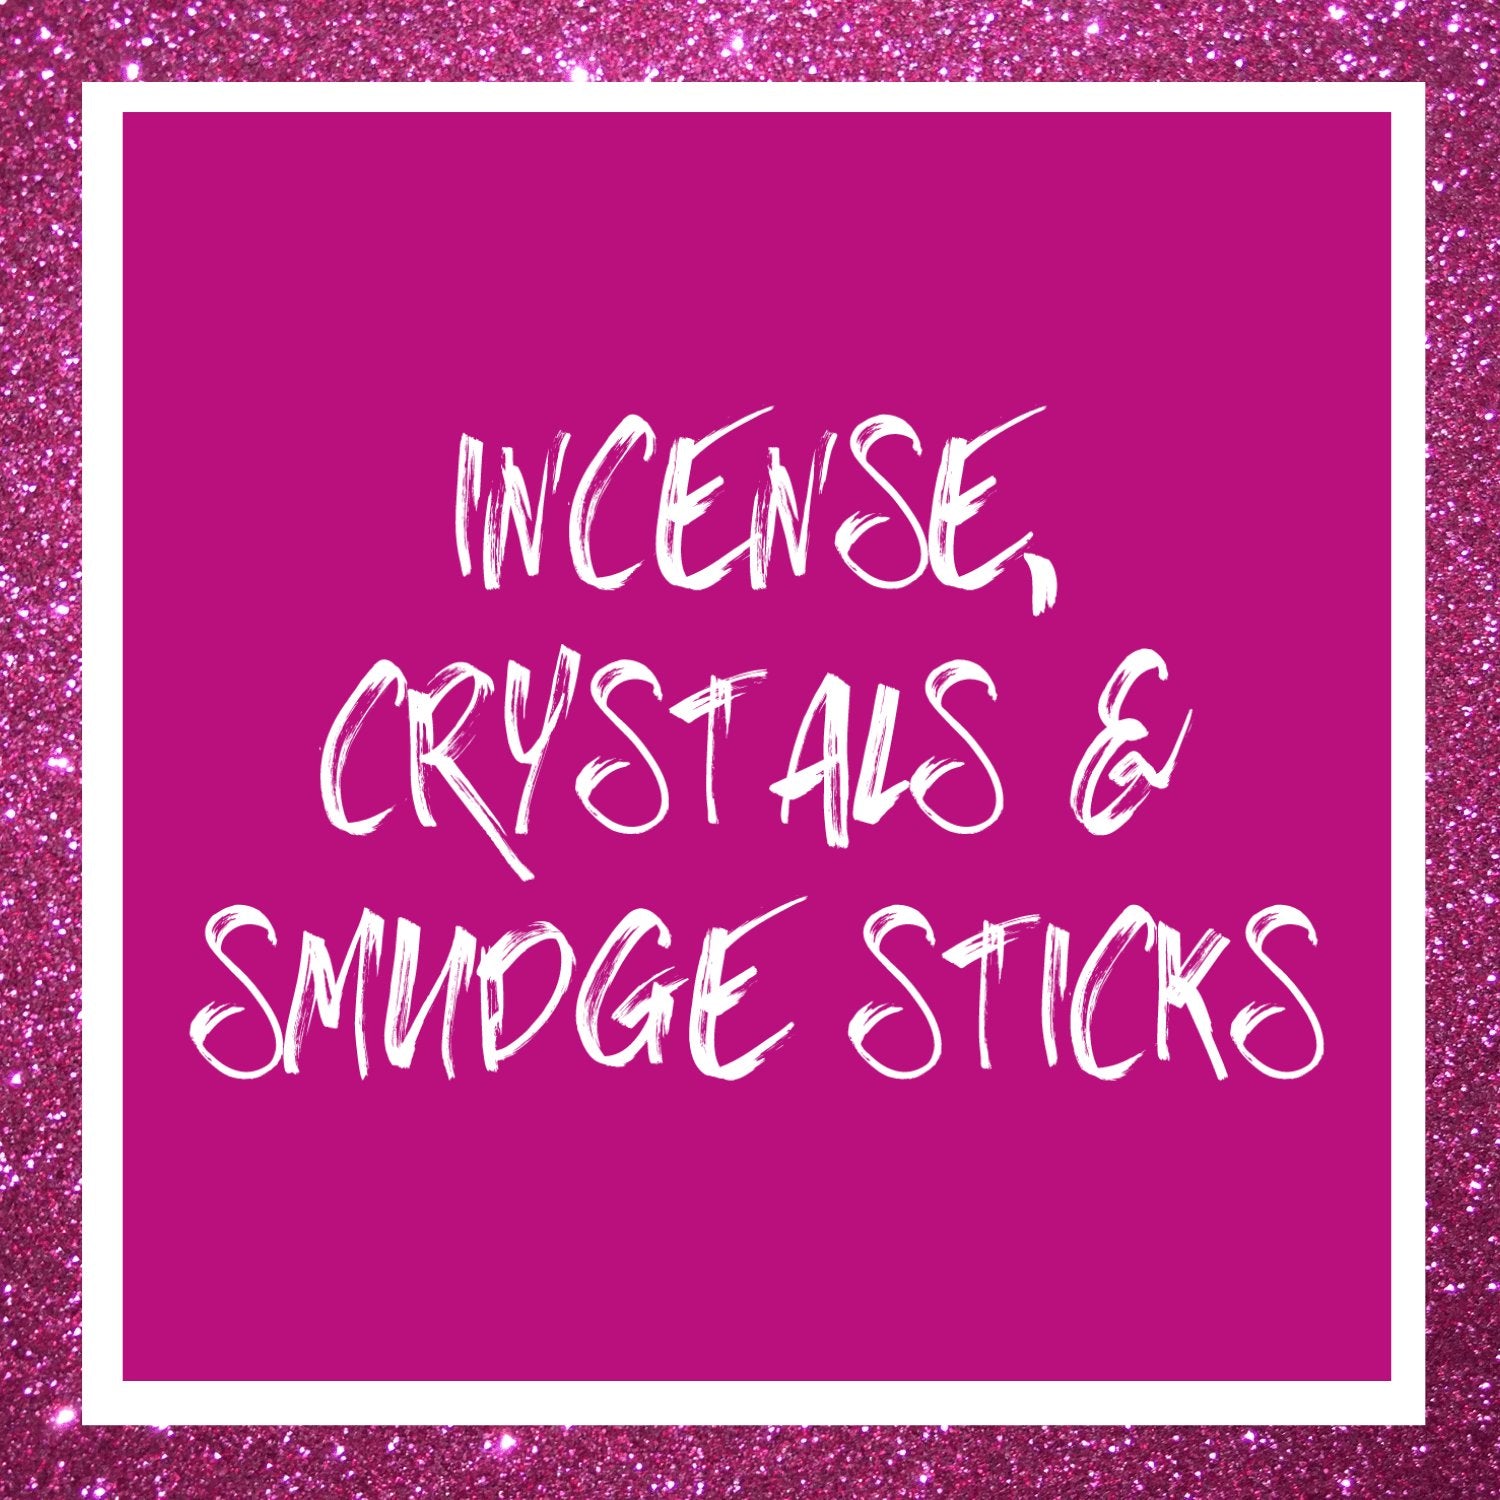 Incense, Crystals & Smudge Sticks